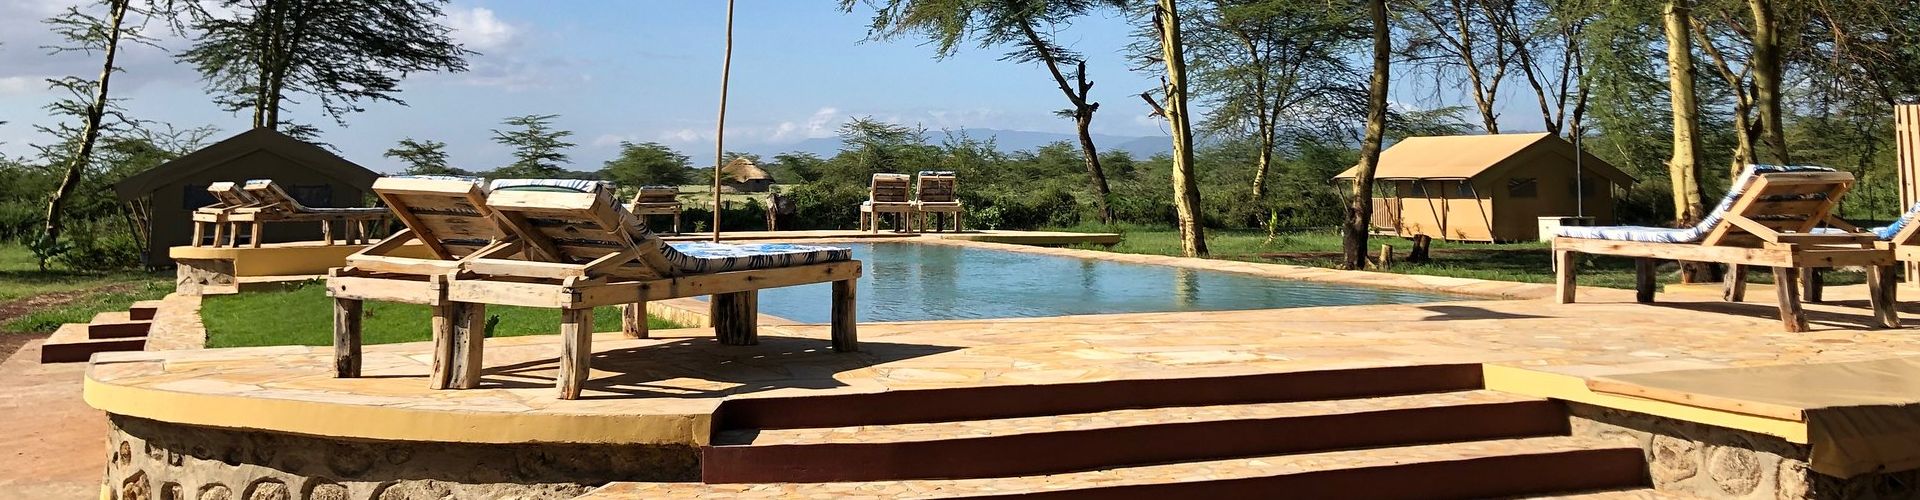 Sautez dans une belle piscine après un long voyage dans cet hébergement Africa Safari.